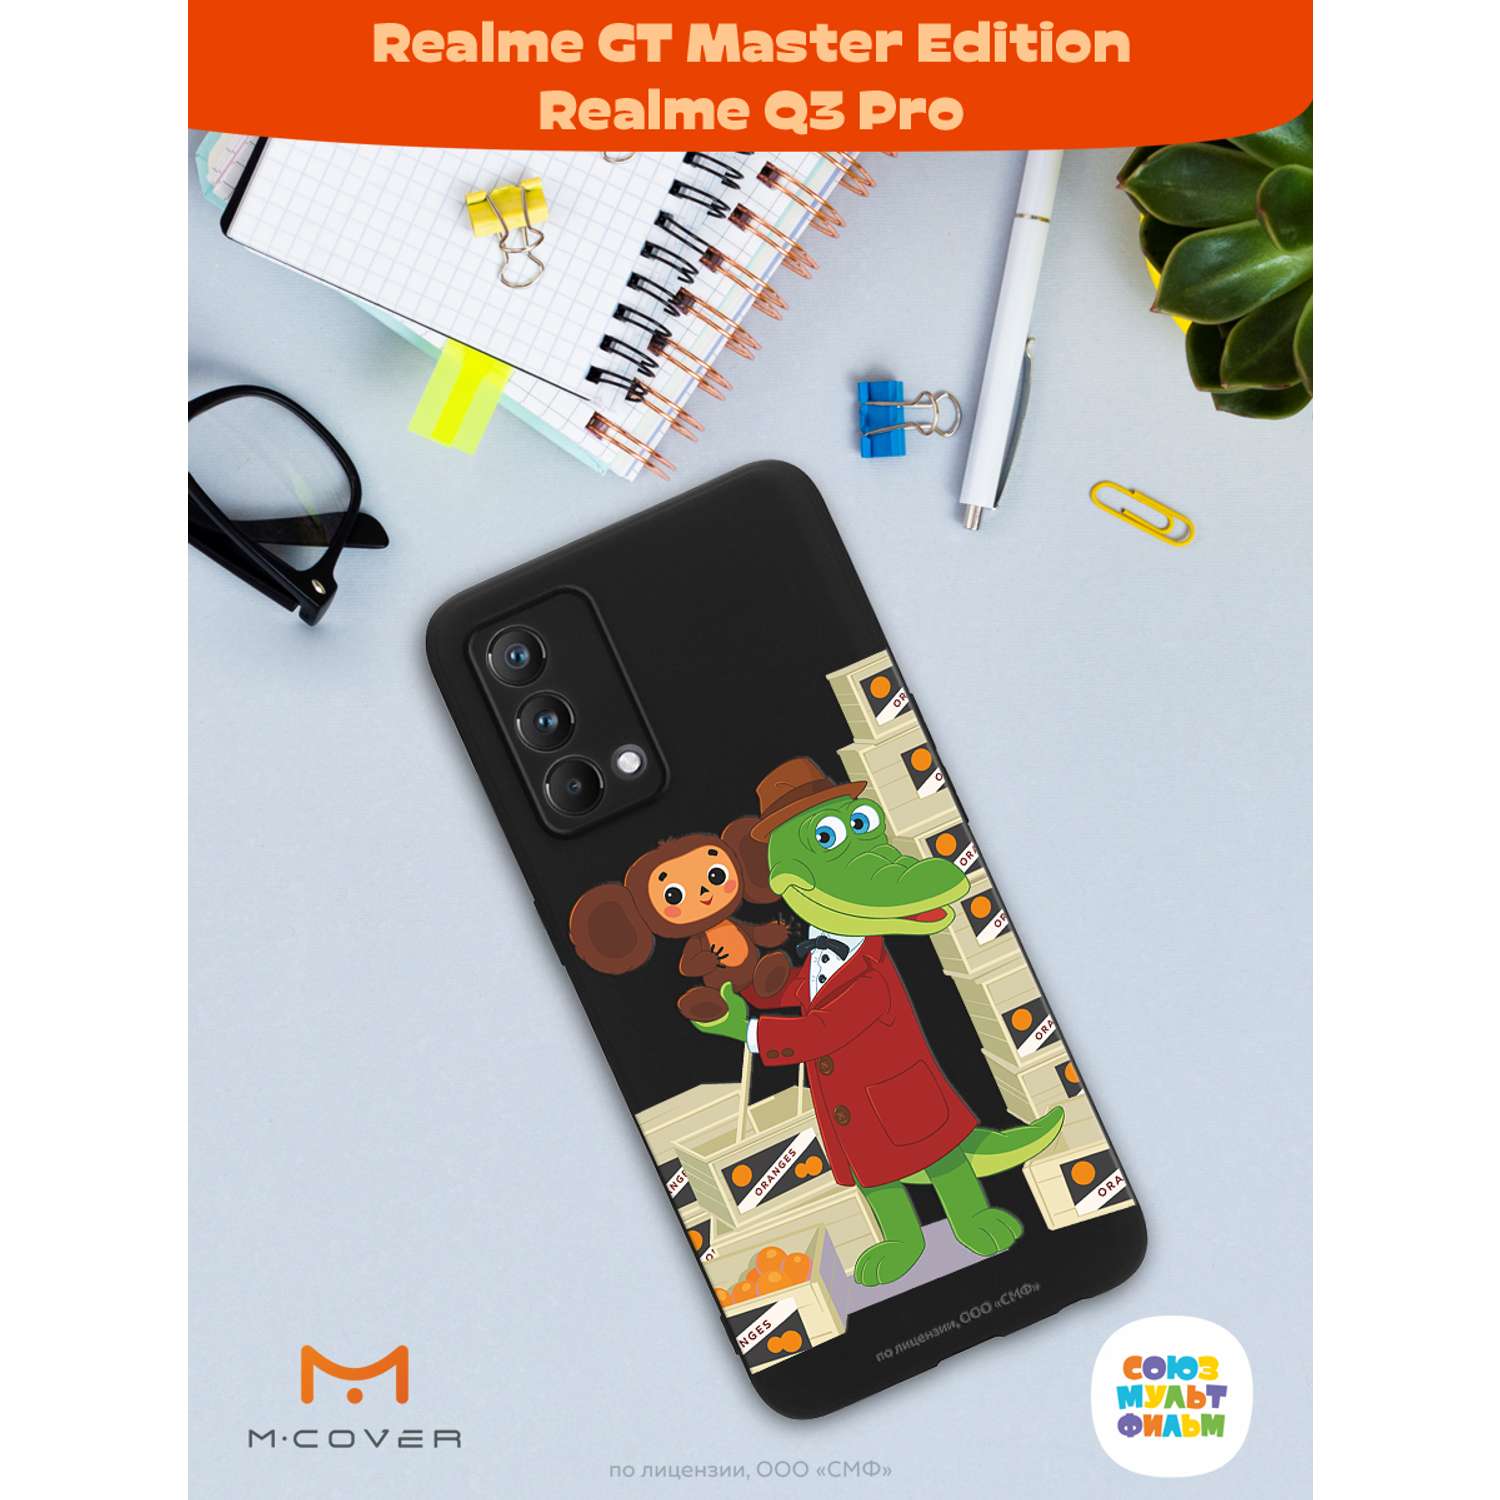 Силиконовый чехол Mcover для смартфона Realme GT Master Edition Q3 Pro Союзмультфильм Ушастая находка - фото 3